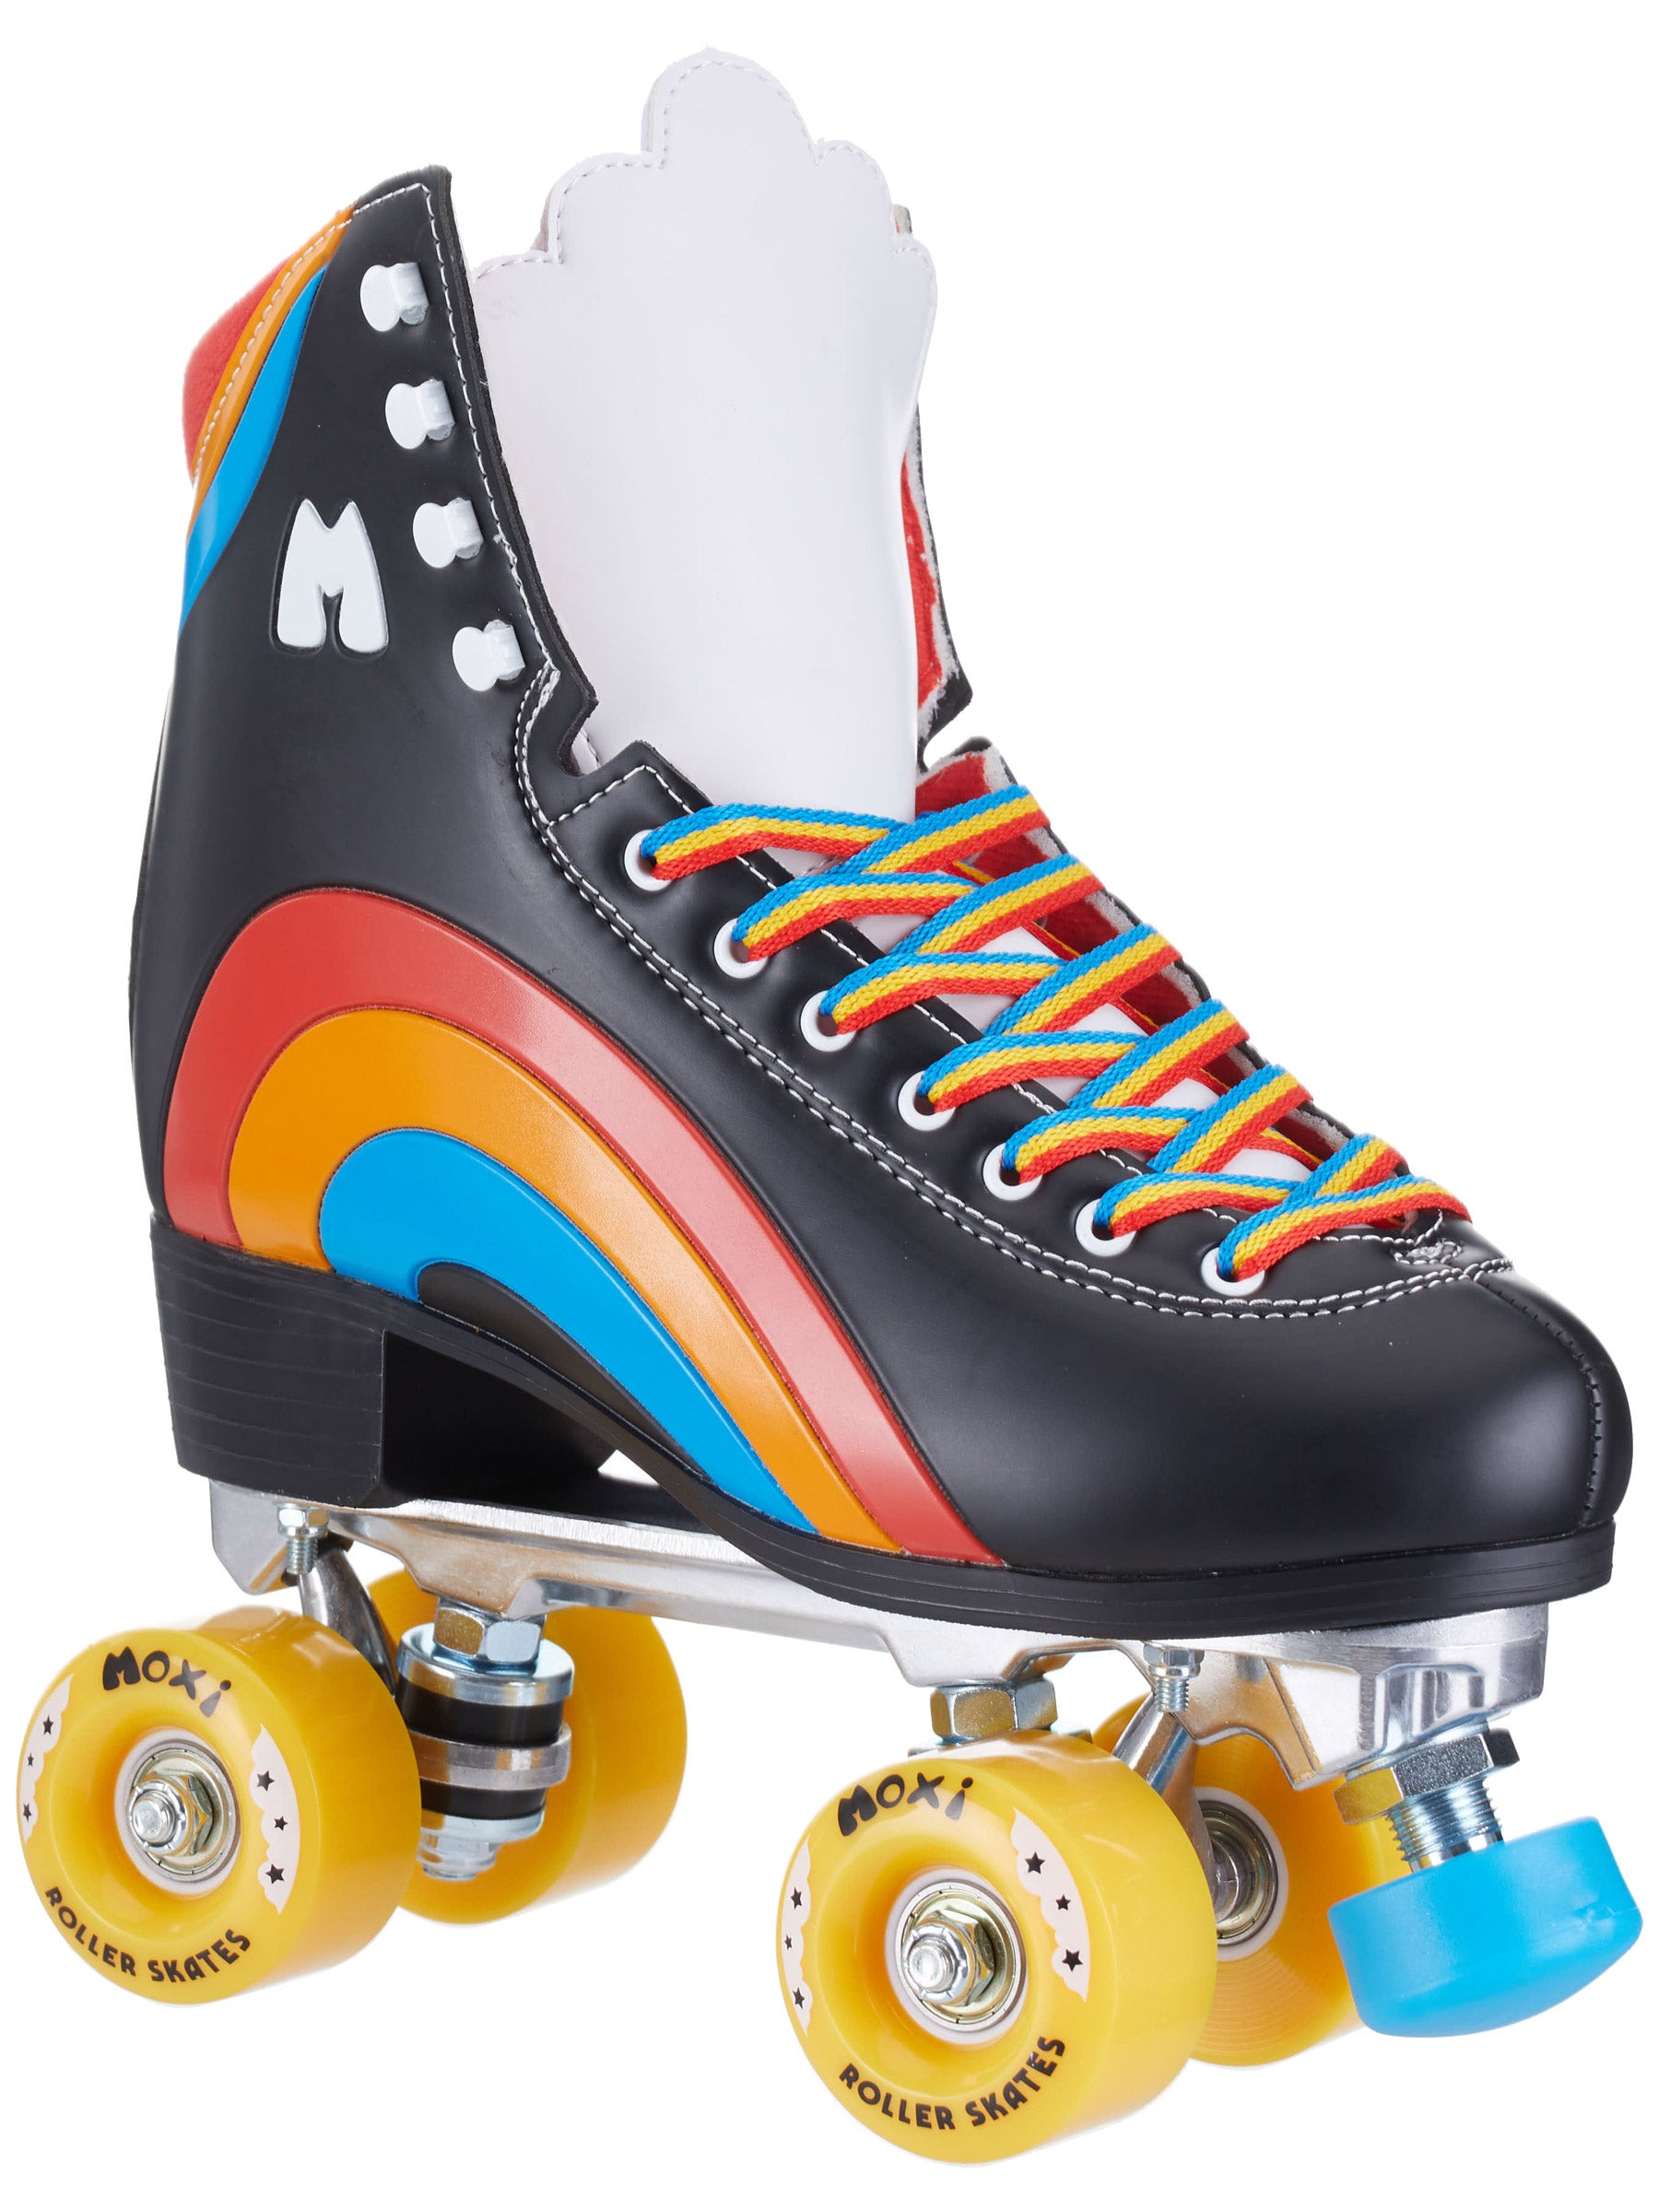 Asphalt Black - Outdoor Roller Skates Rainbow Rider Moxi 